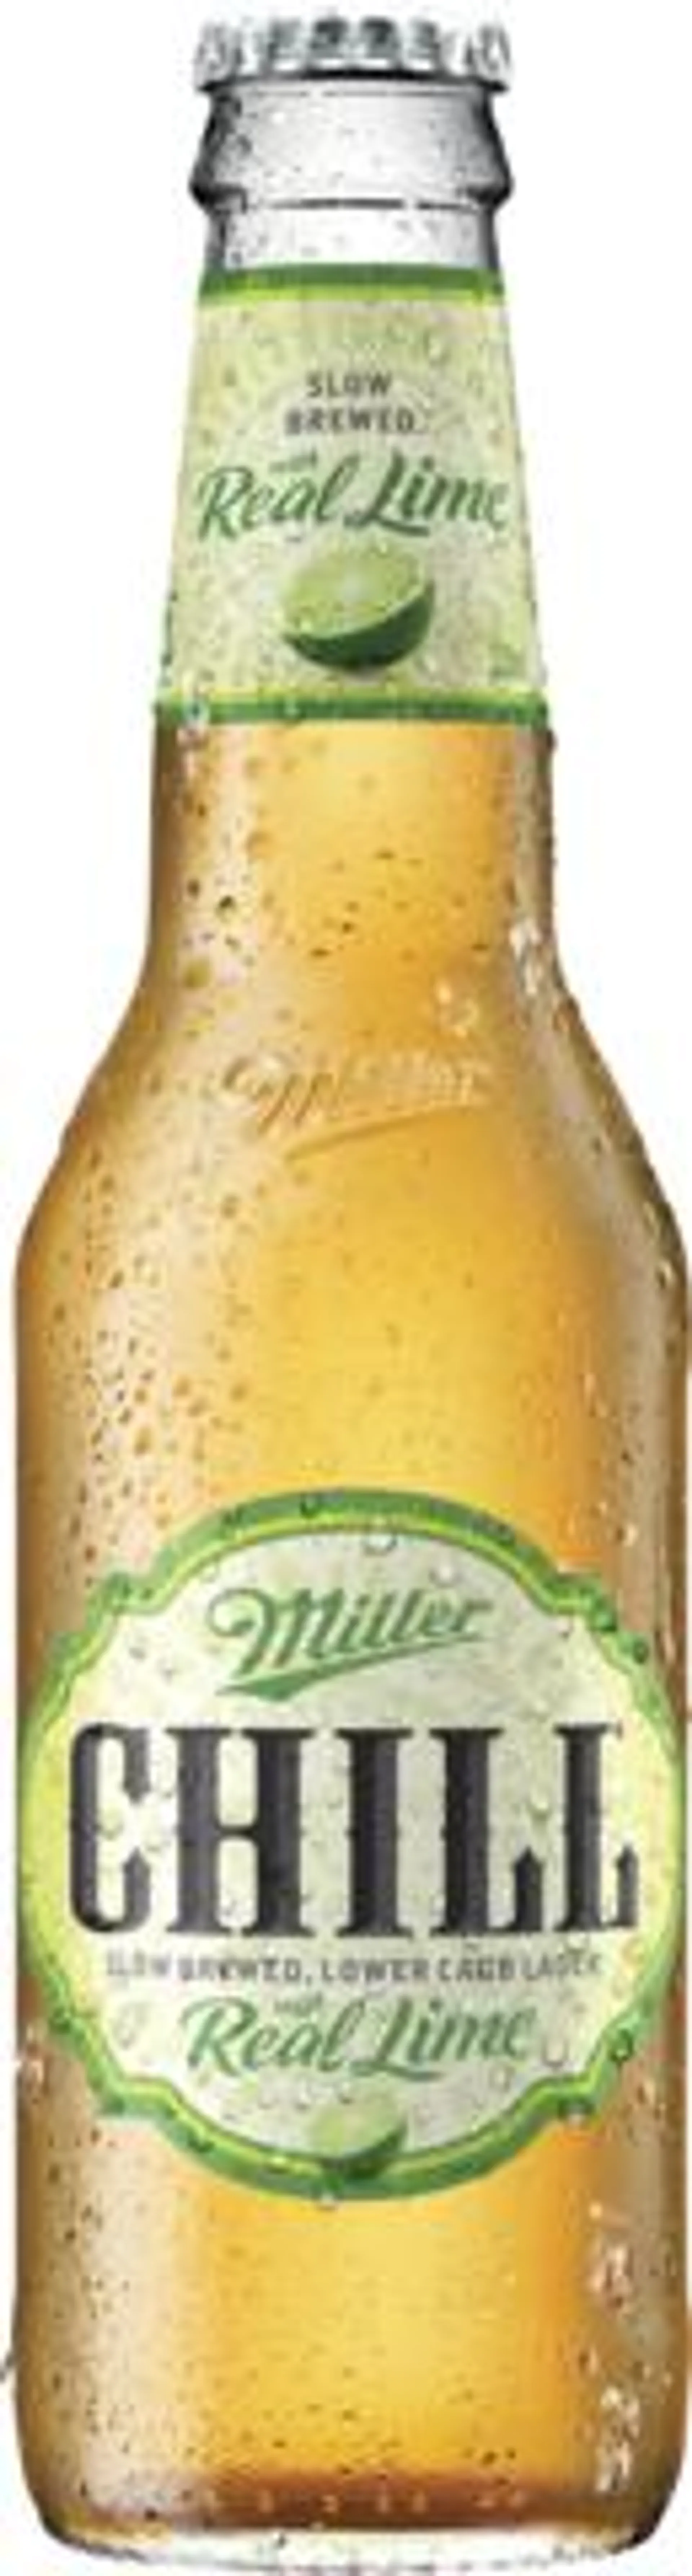 Miller Chill Lime Bottle 6X330ML